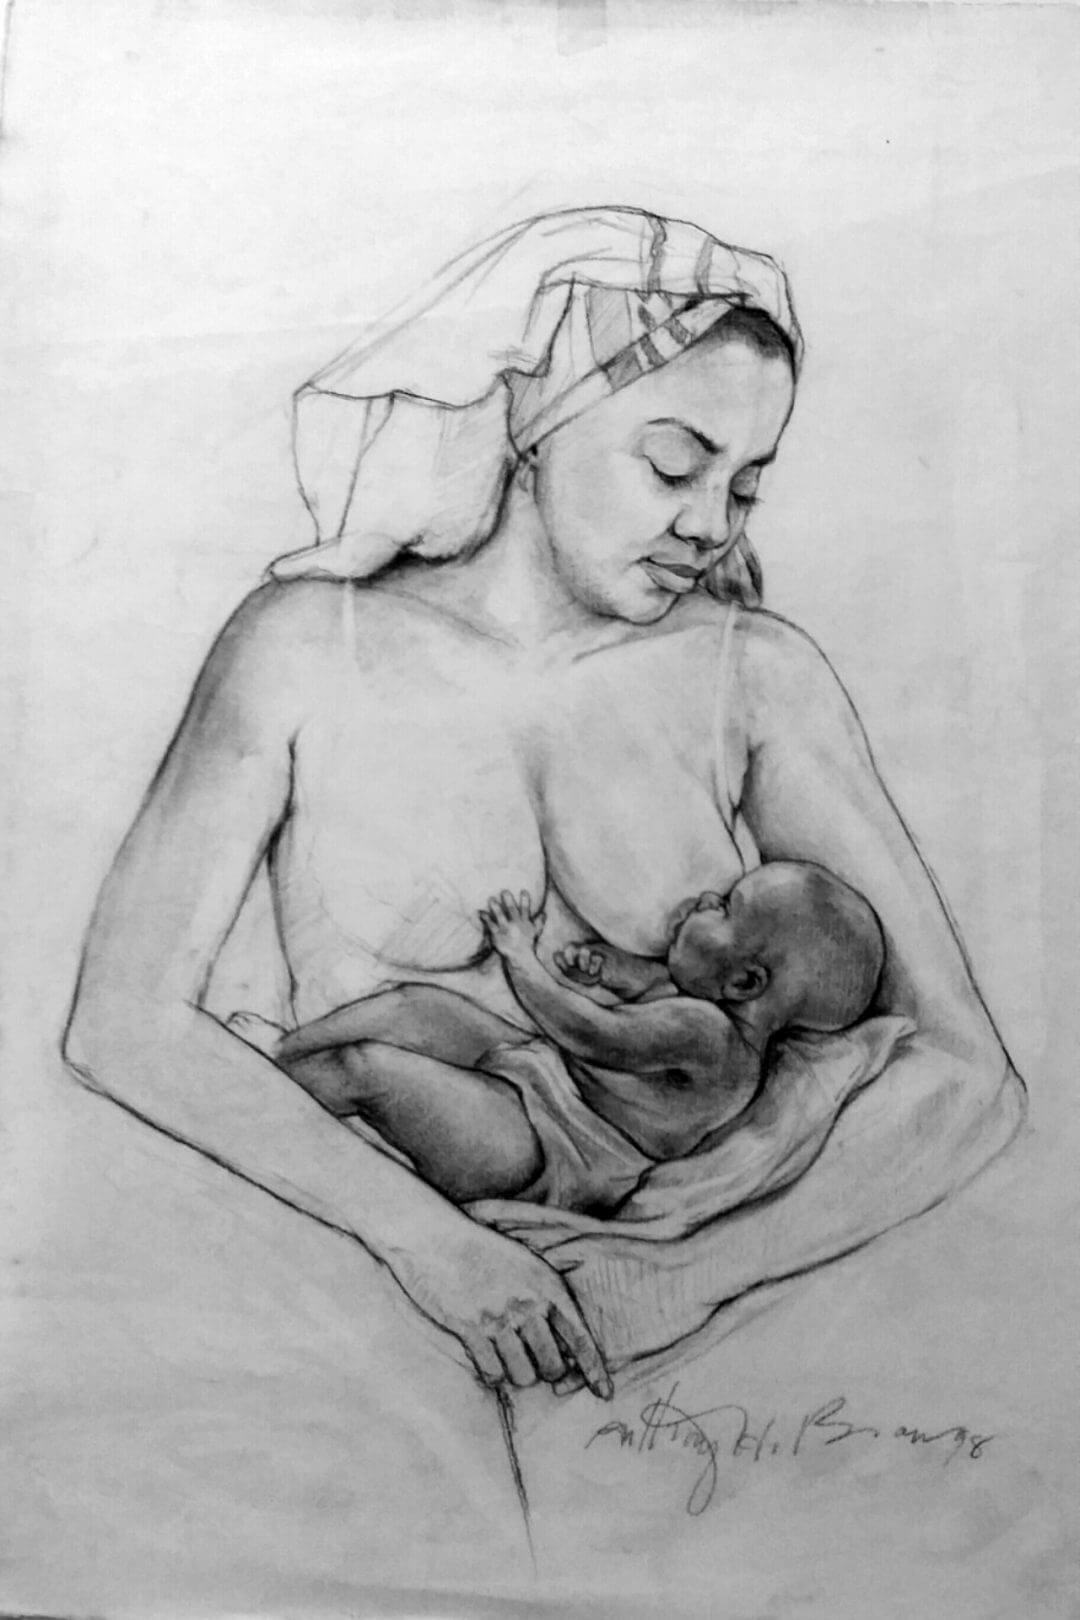 Woman breast feeding baby boy